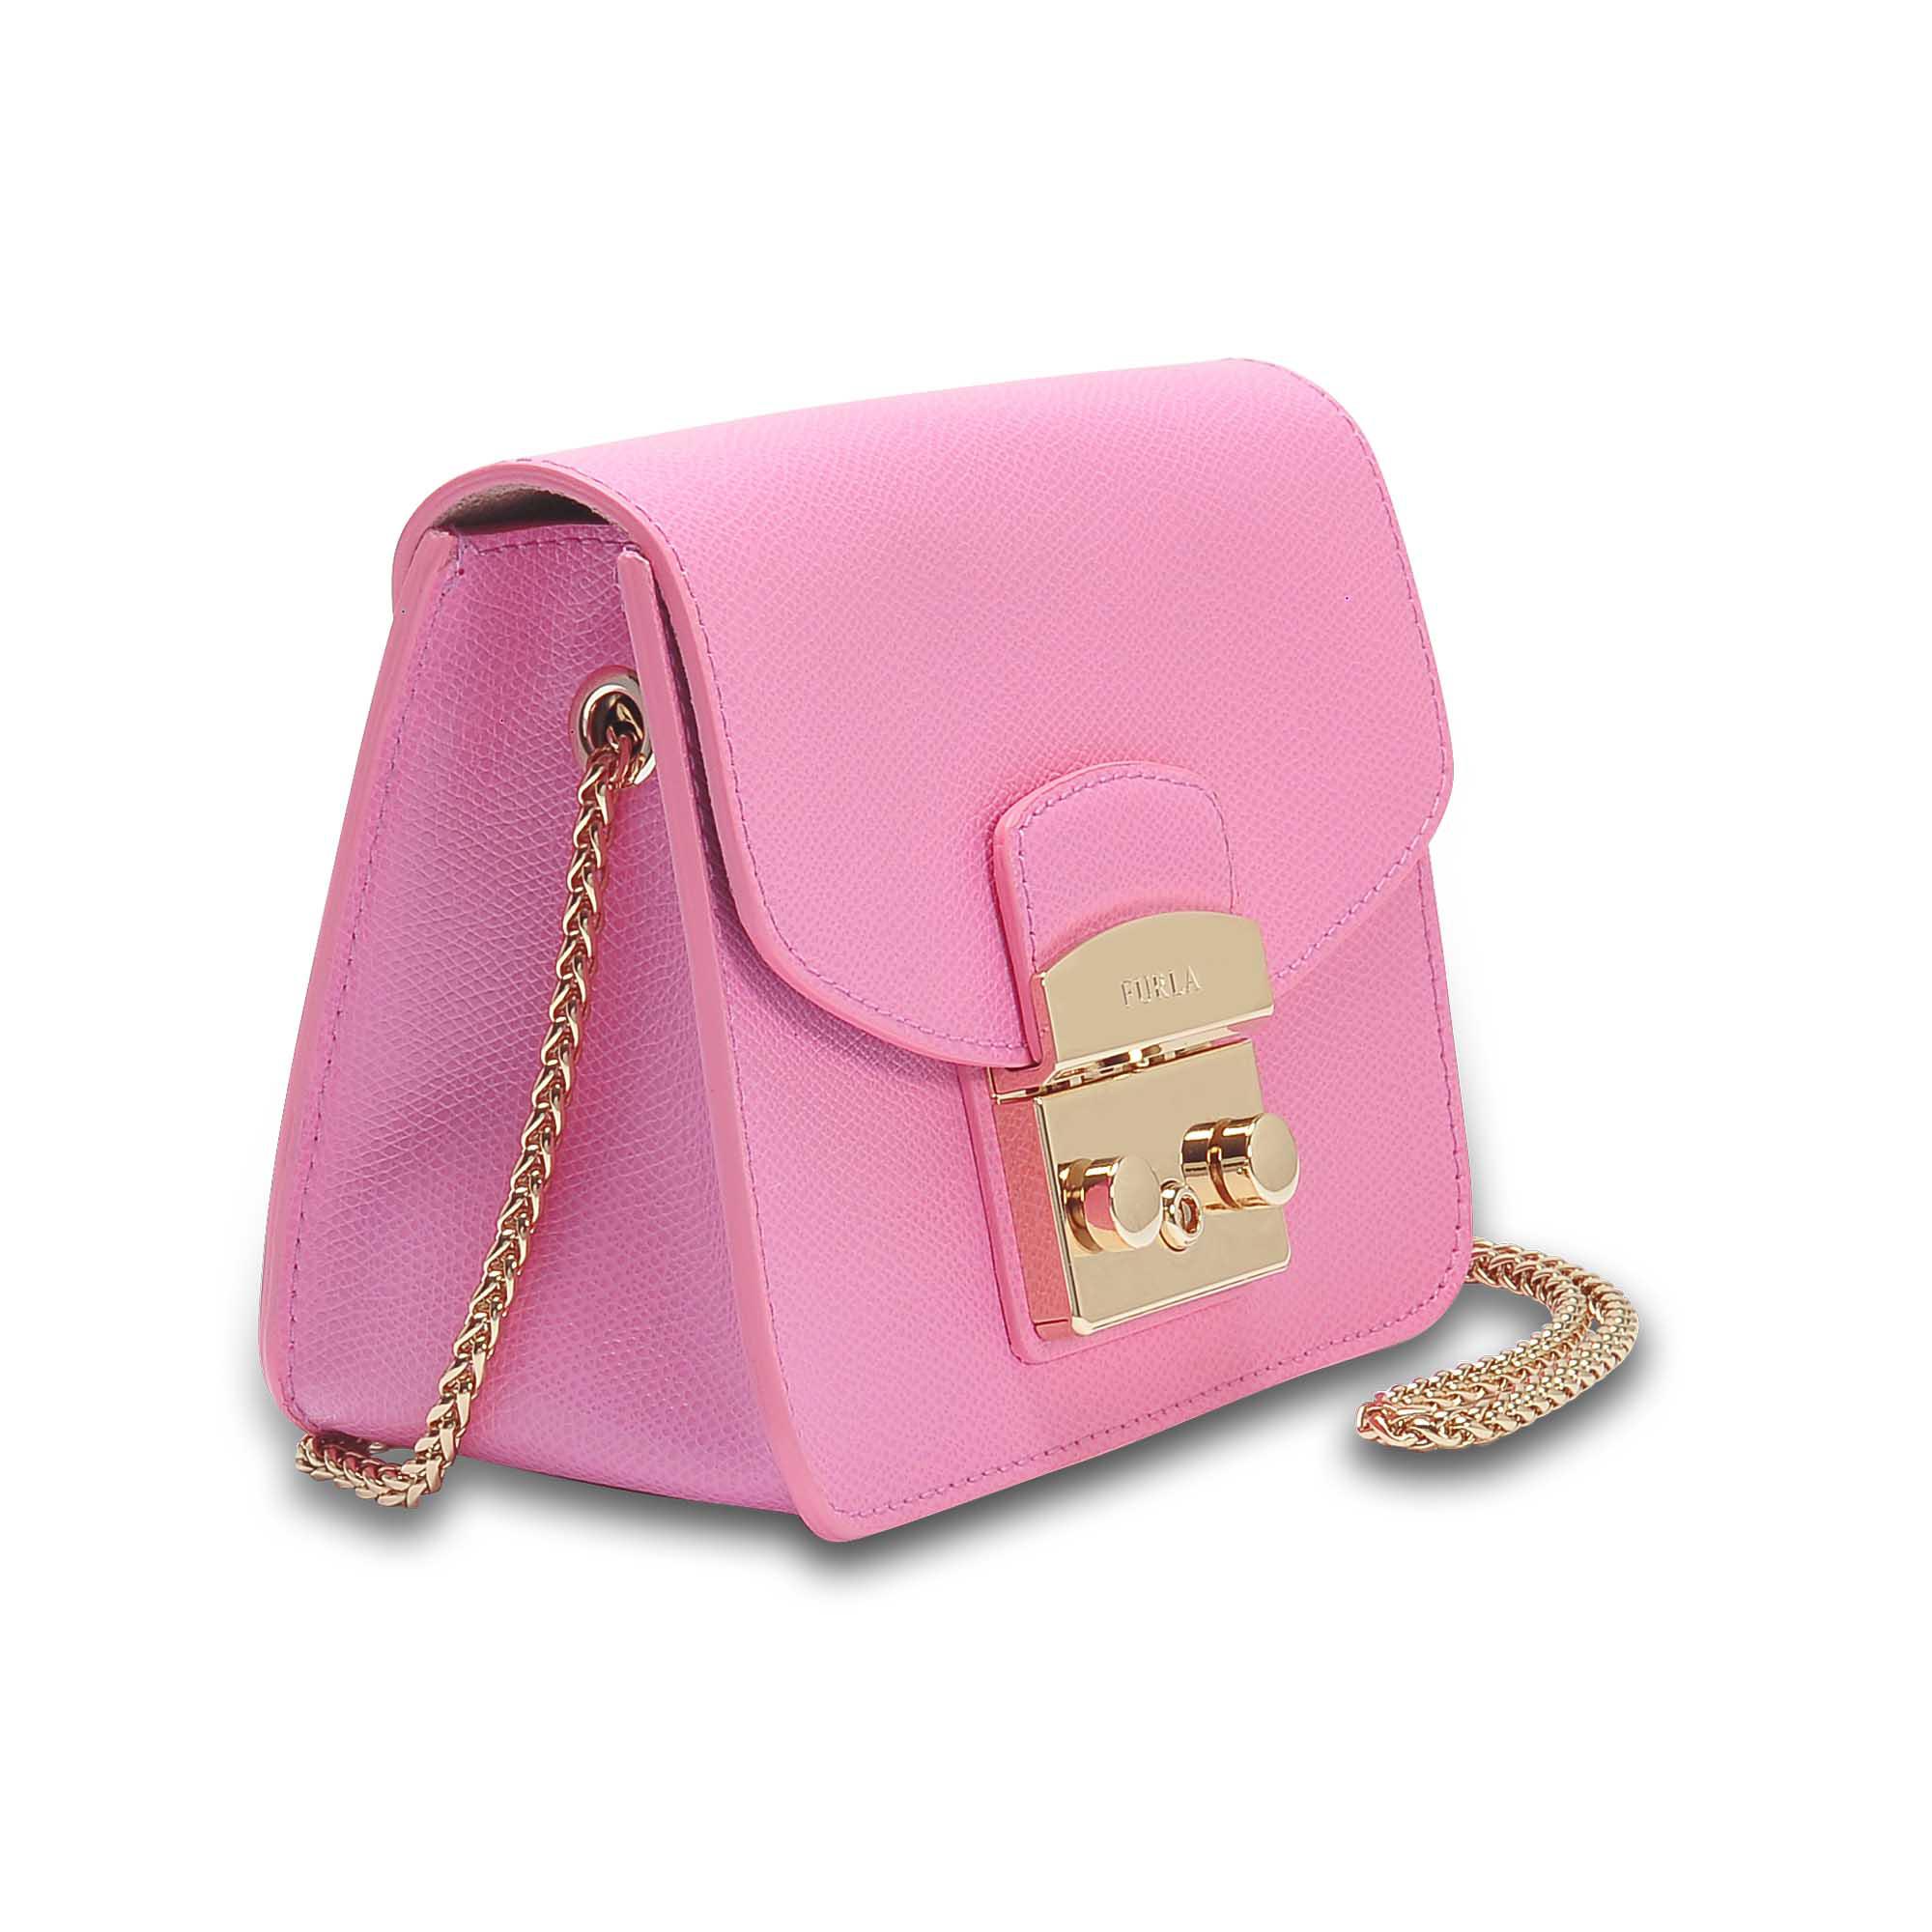 Furla Metropolis Mini Crossbody Bag in Pink - Lyst